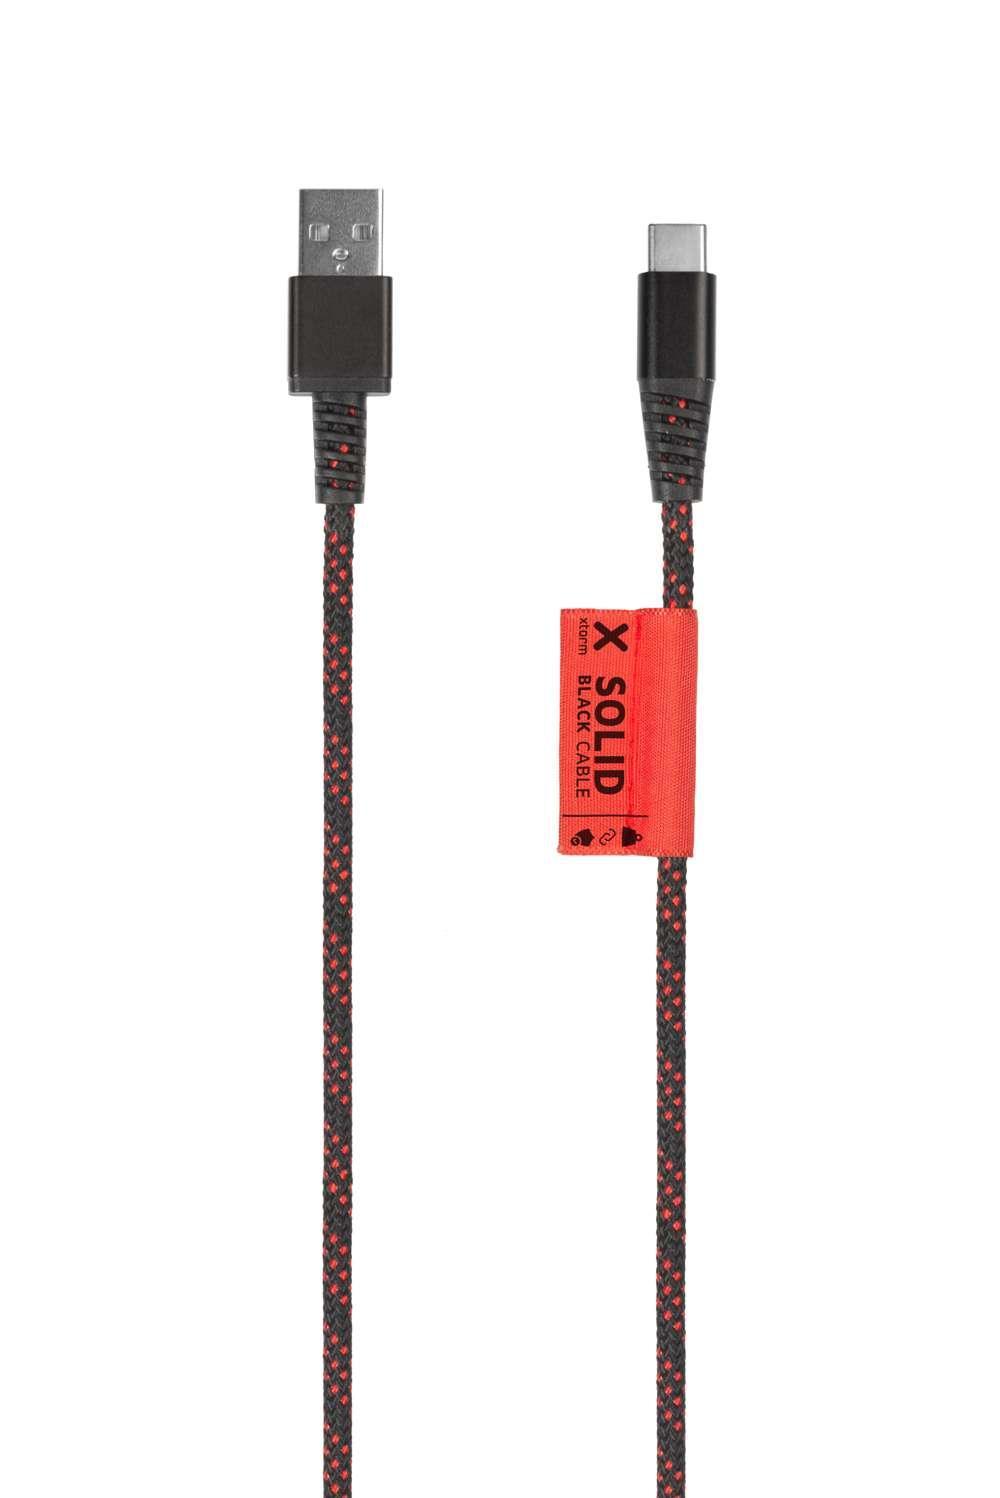 Xtorm Solid Blue USB naar USB-C kabel - 1 meter